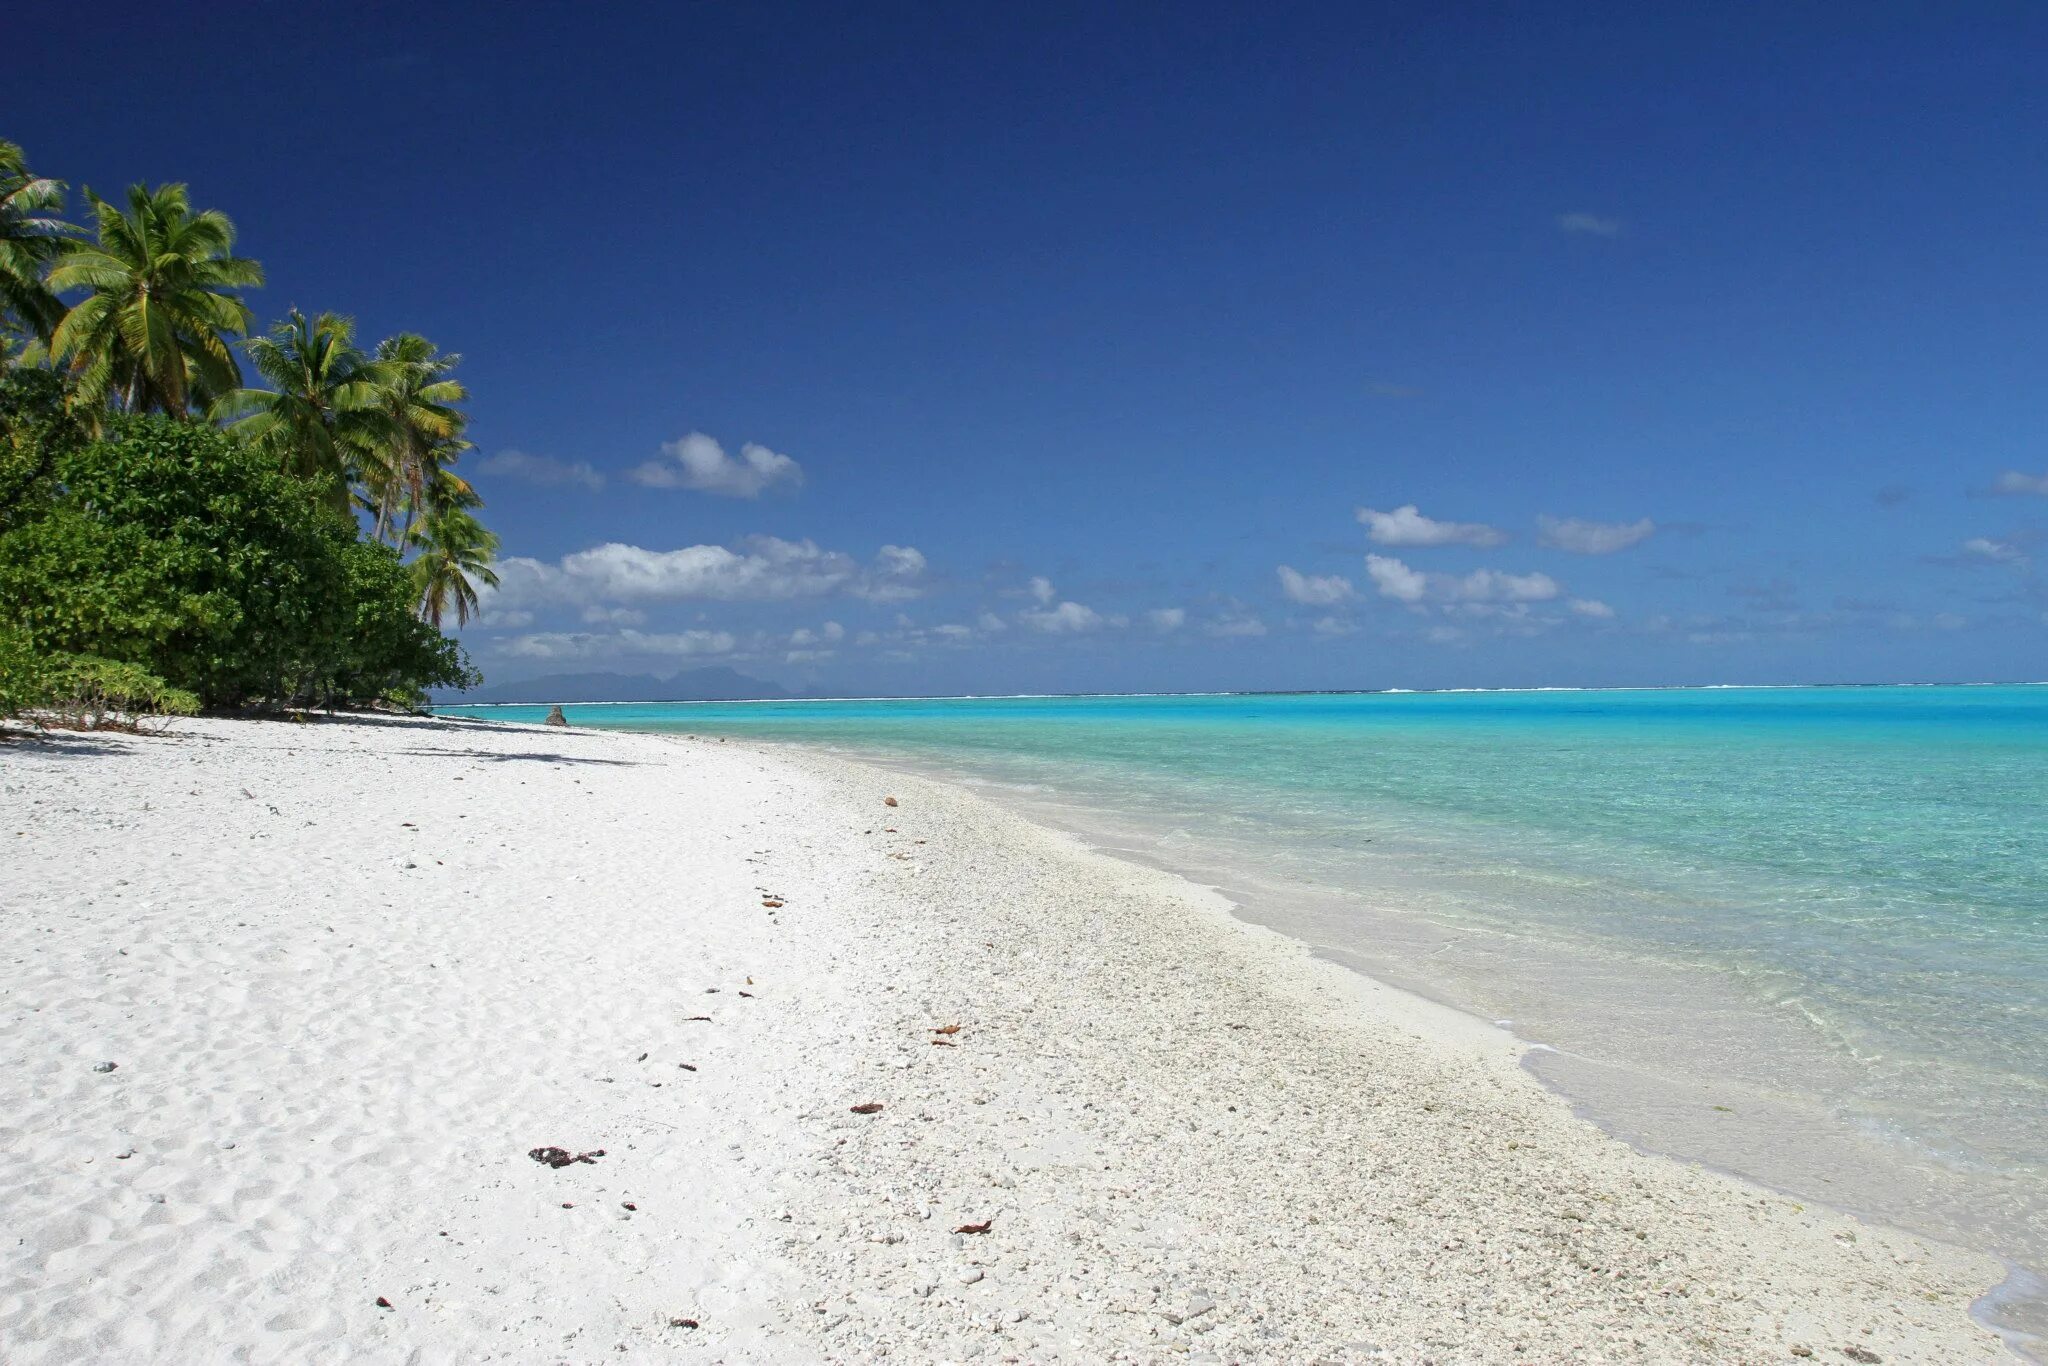 Бали пляжи с белым песком. Пустынный пляж с белым песком. Пляжи с белым песком в России. Малайзия пляжи с белым песком. Perfect island